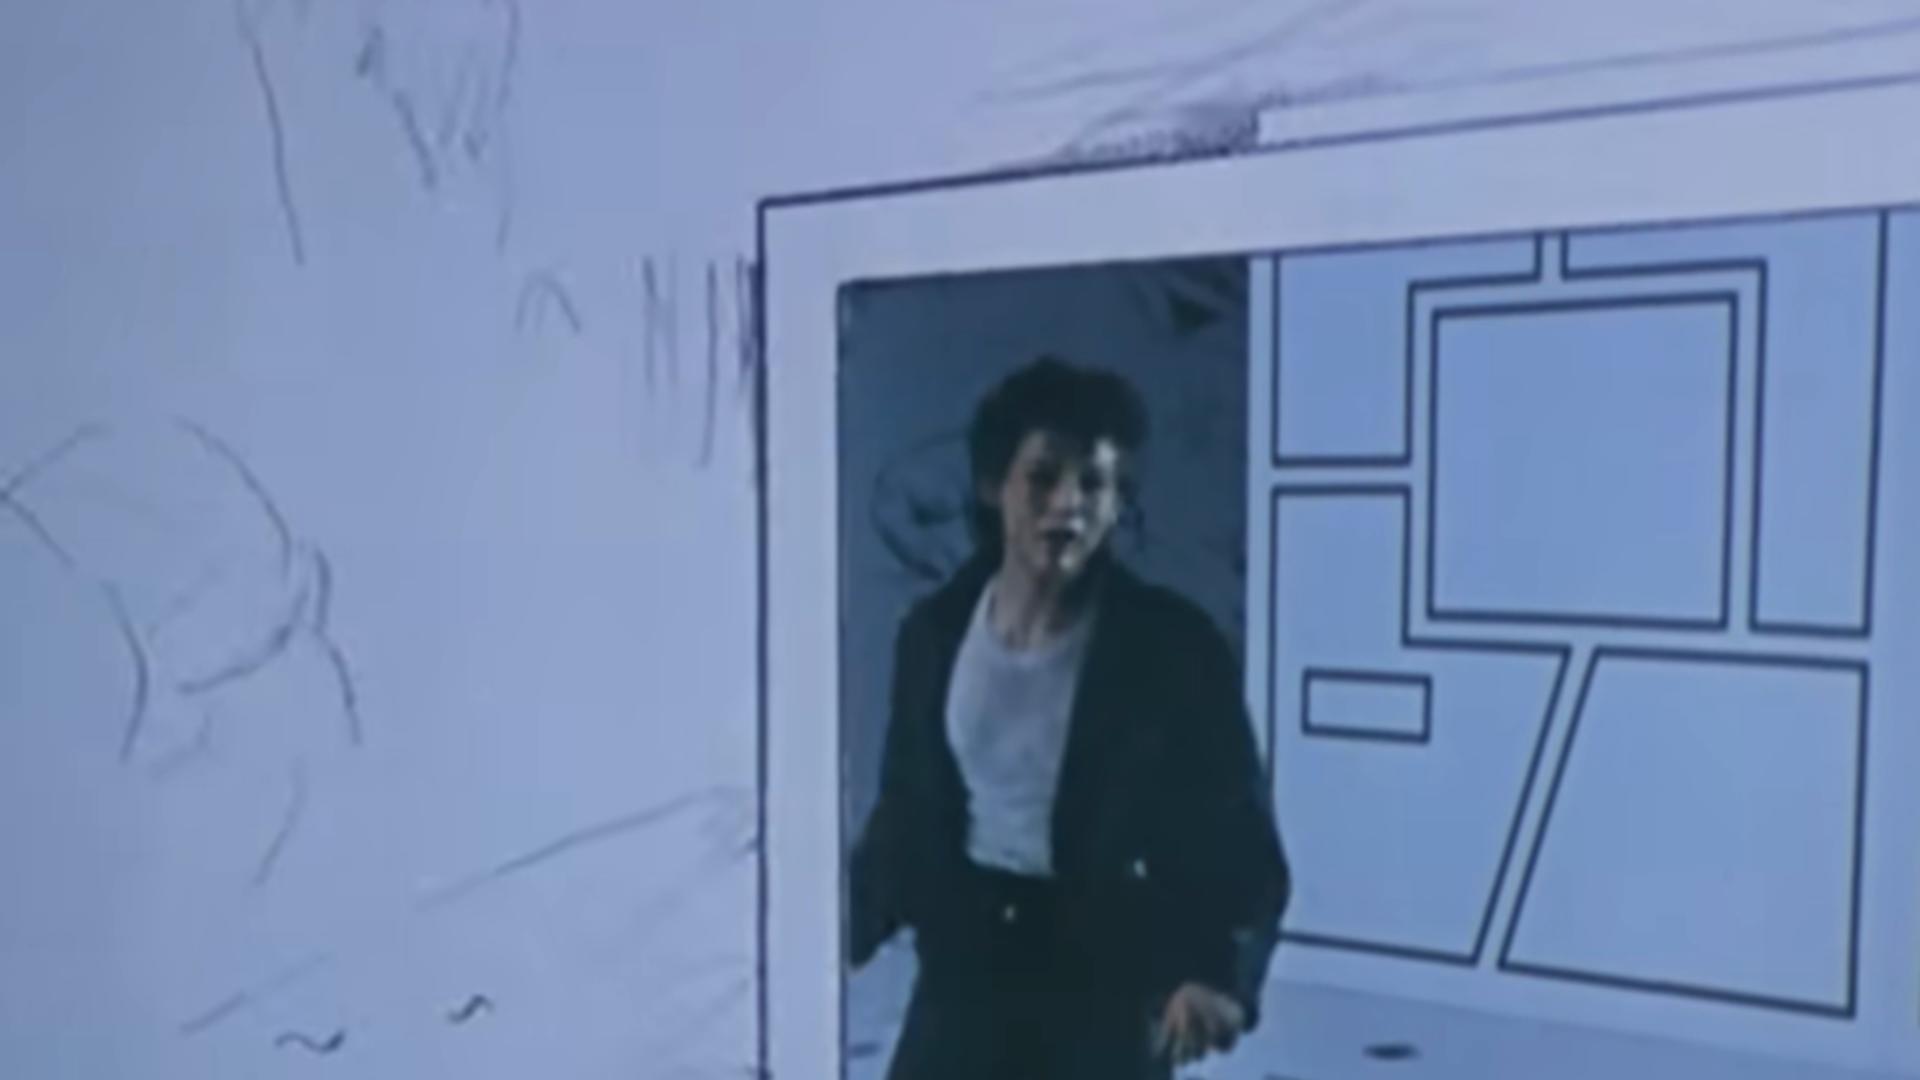 Videoclipul piesei Take On Me a imaginat povestea intr-un spatiu cu 2 dimensiuni